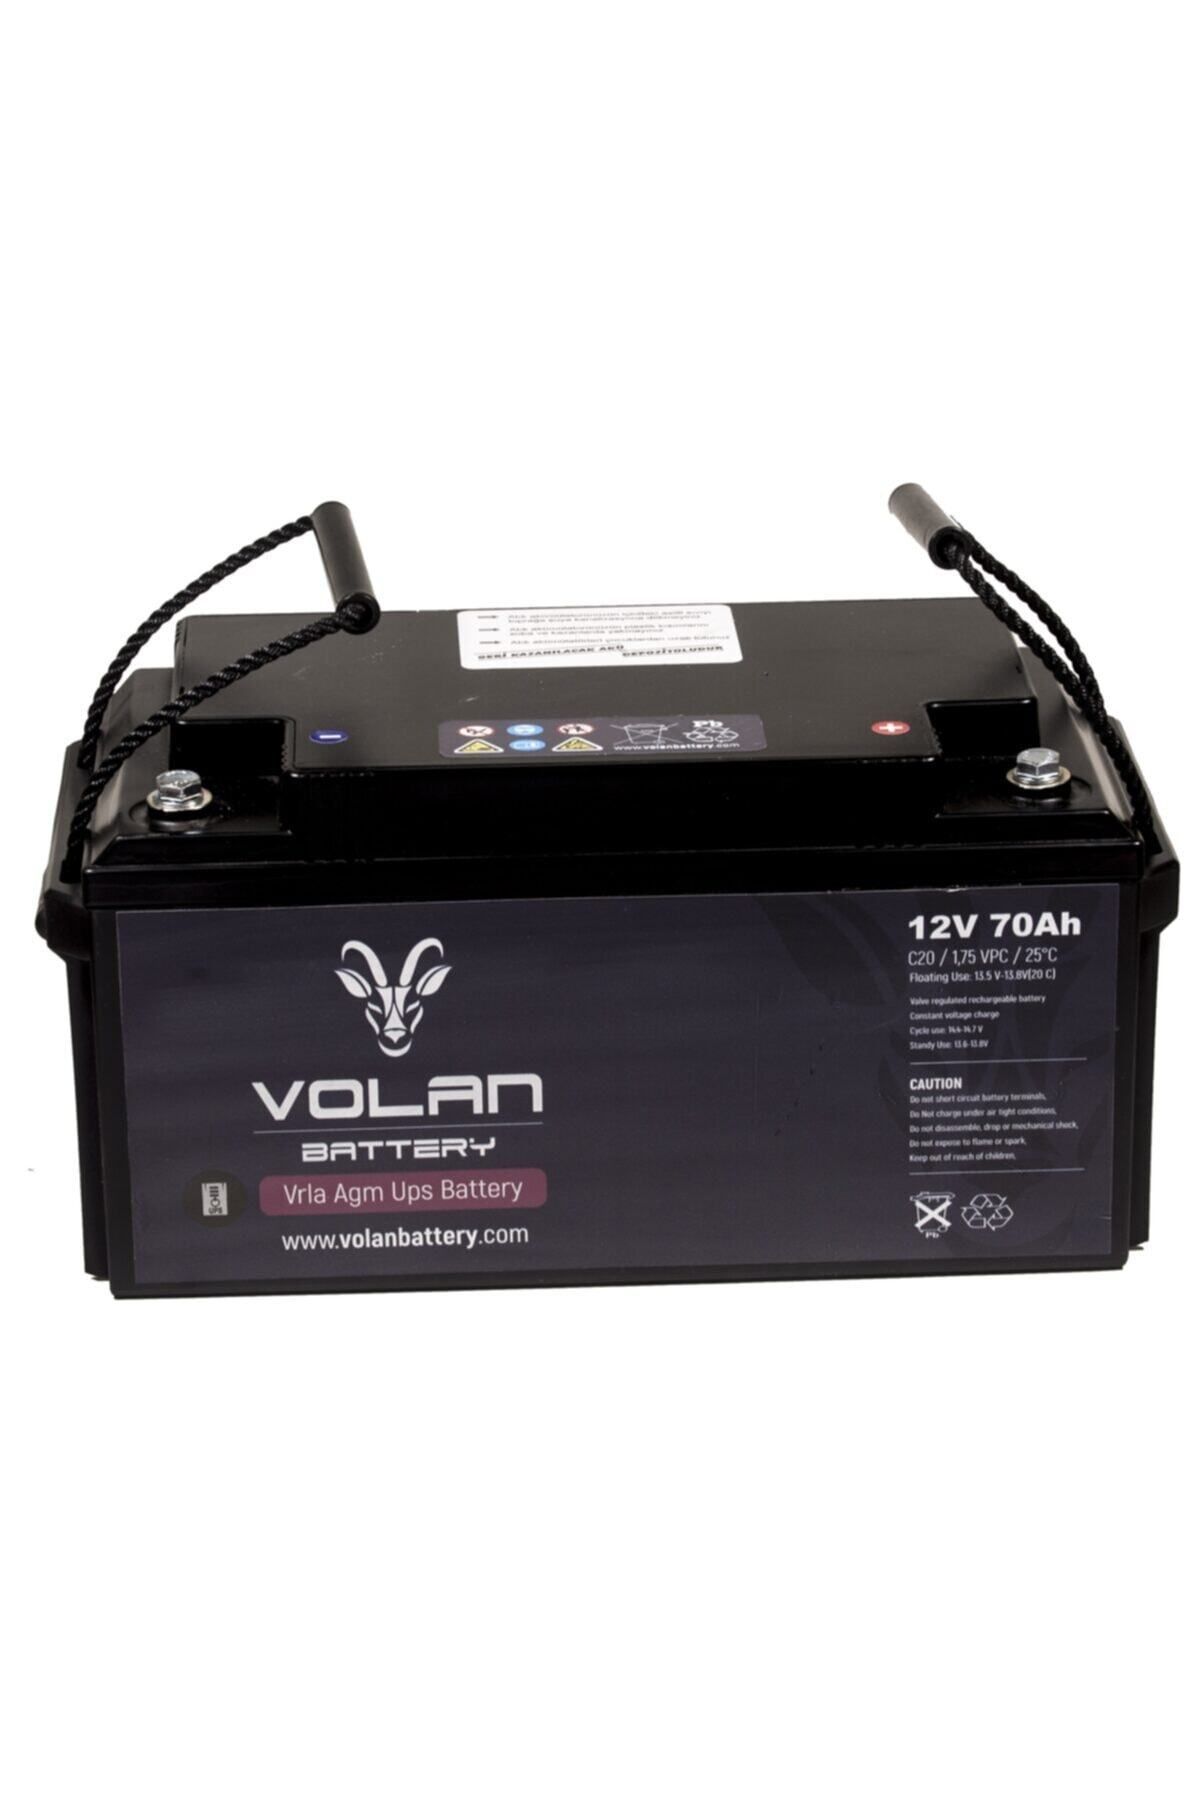 Volan Battery 12 Volt 70 Amper Kuru Akü 3 Yıl Garantili